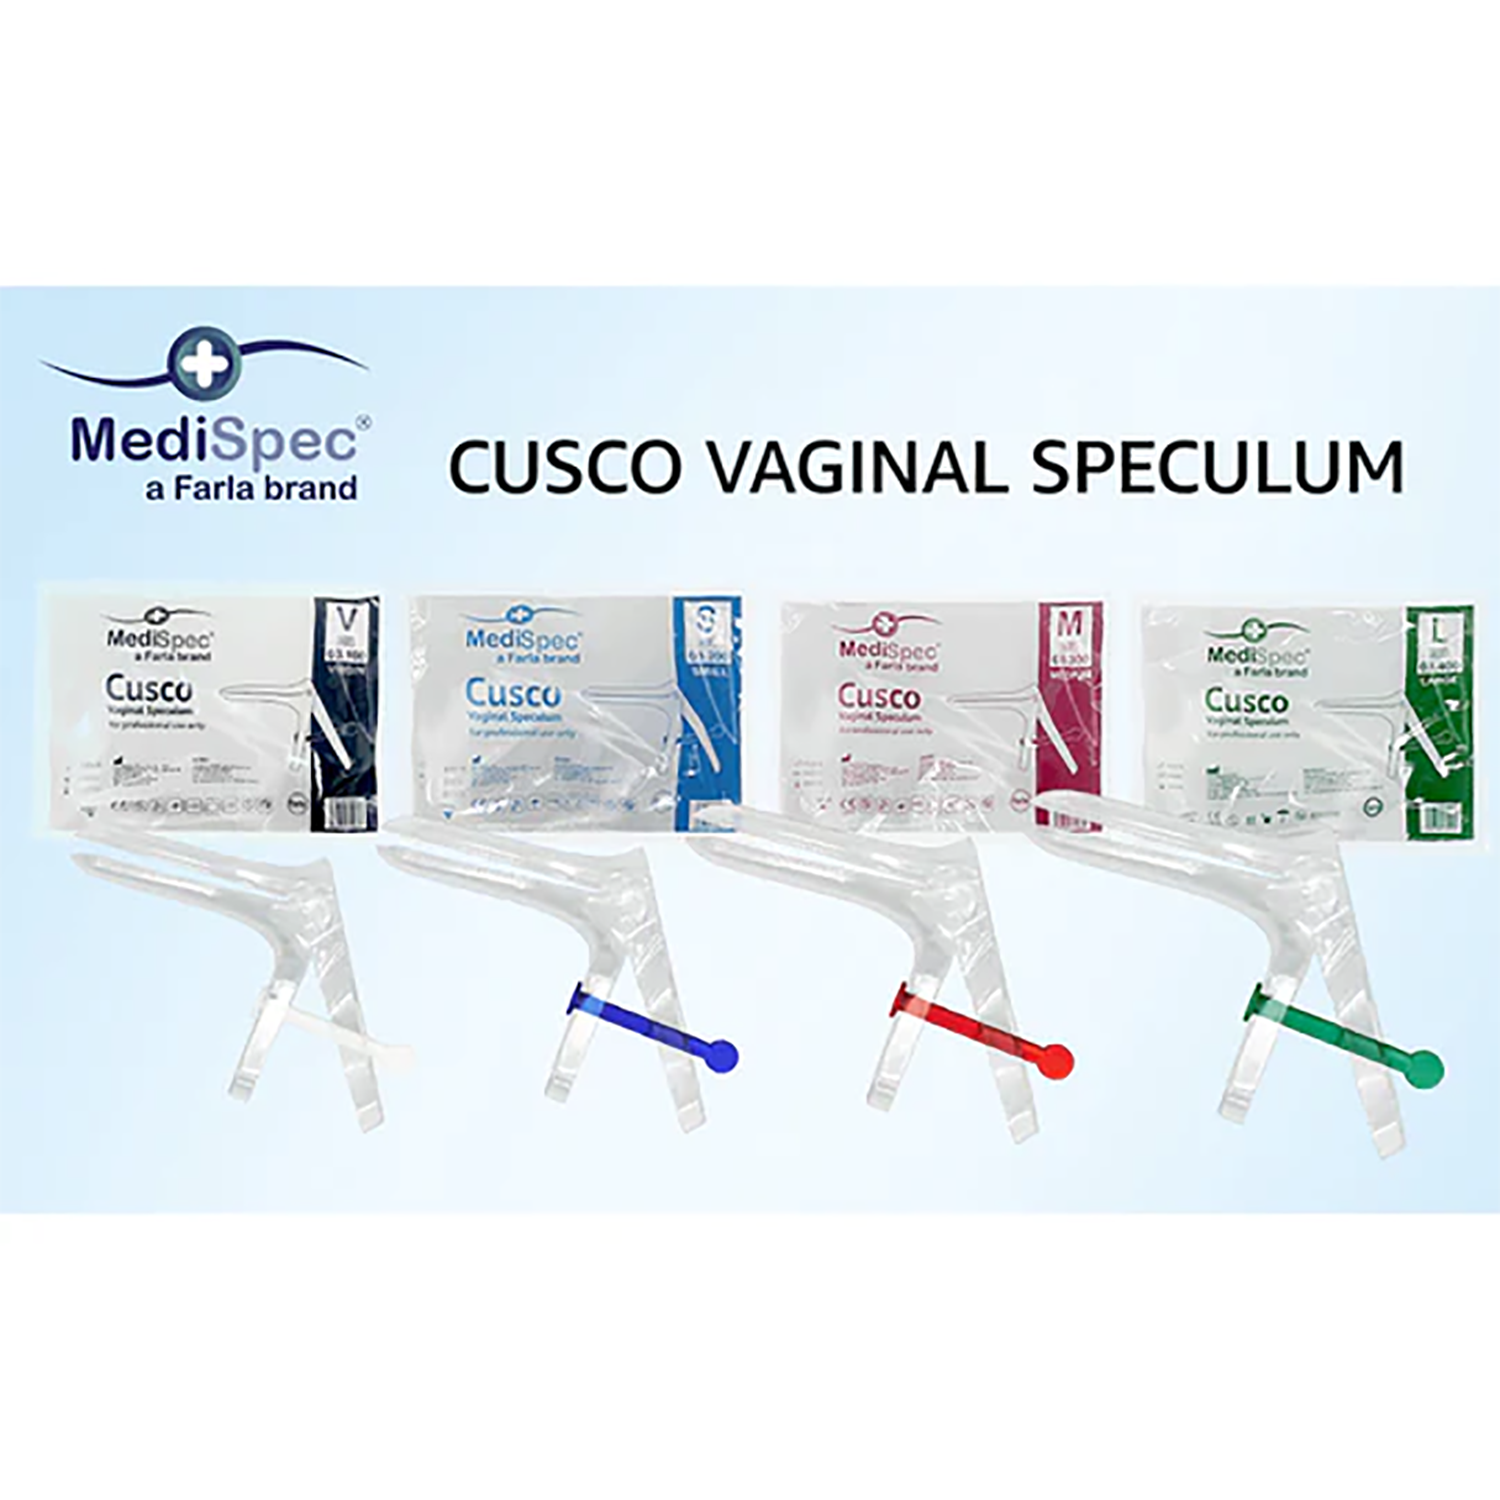 MediSpec Cusco Vaginal Speculum (Locking Mechanism) | Pack of 100 (6)